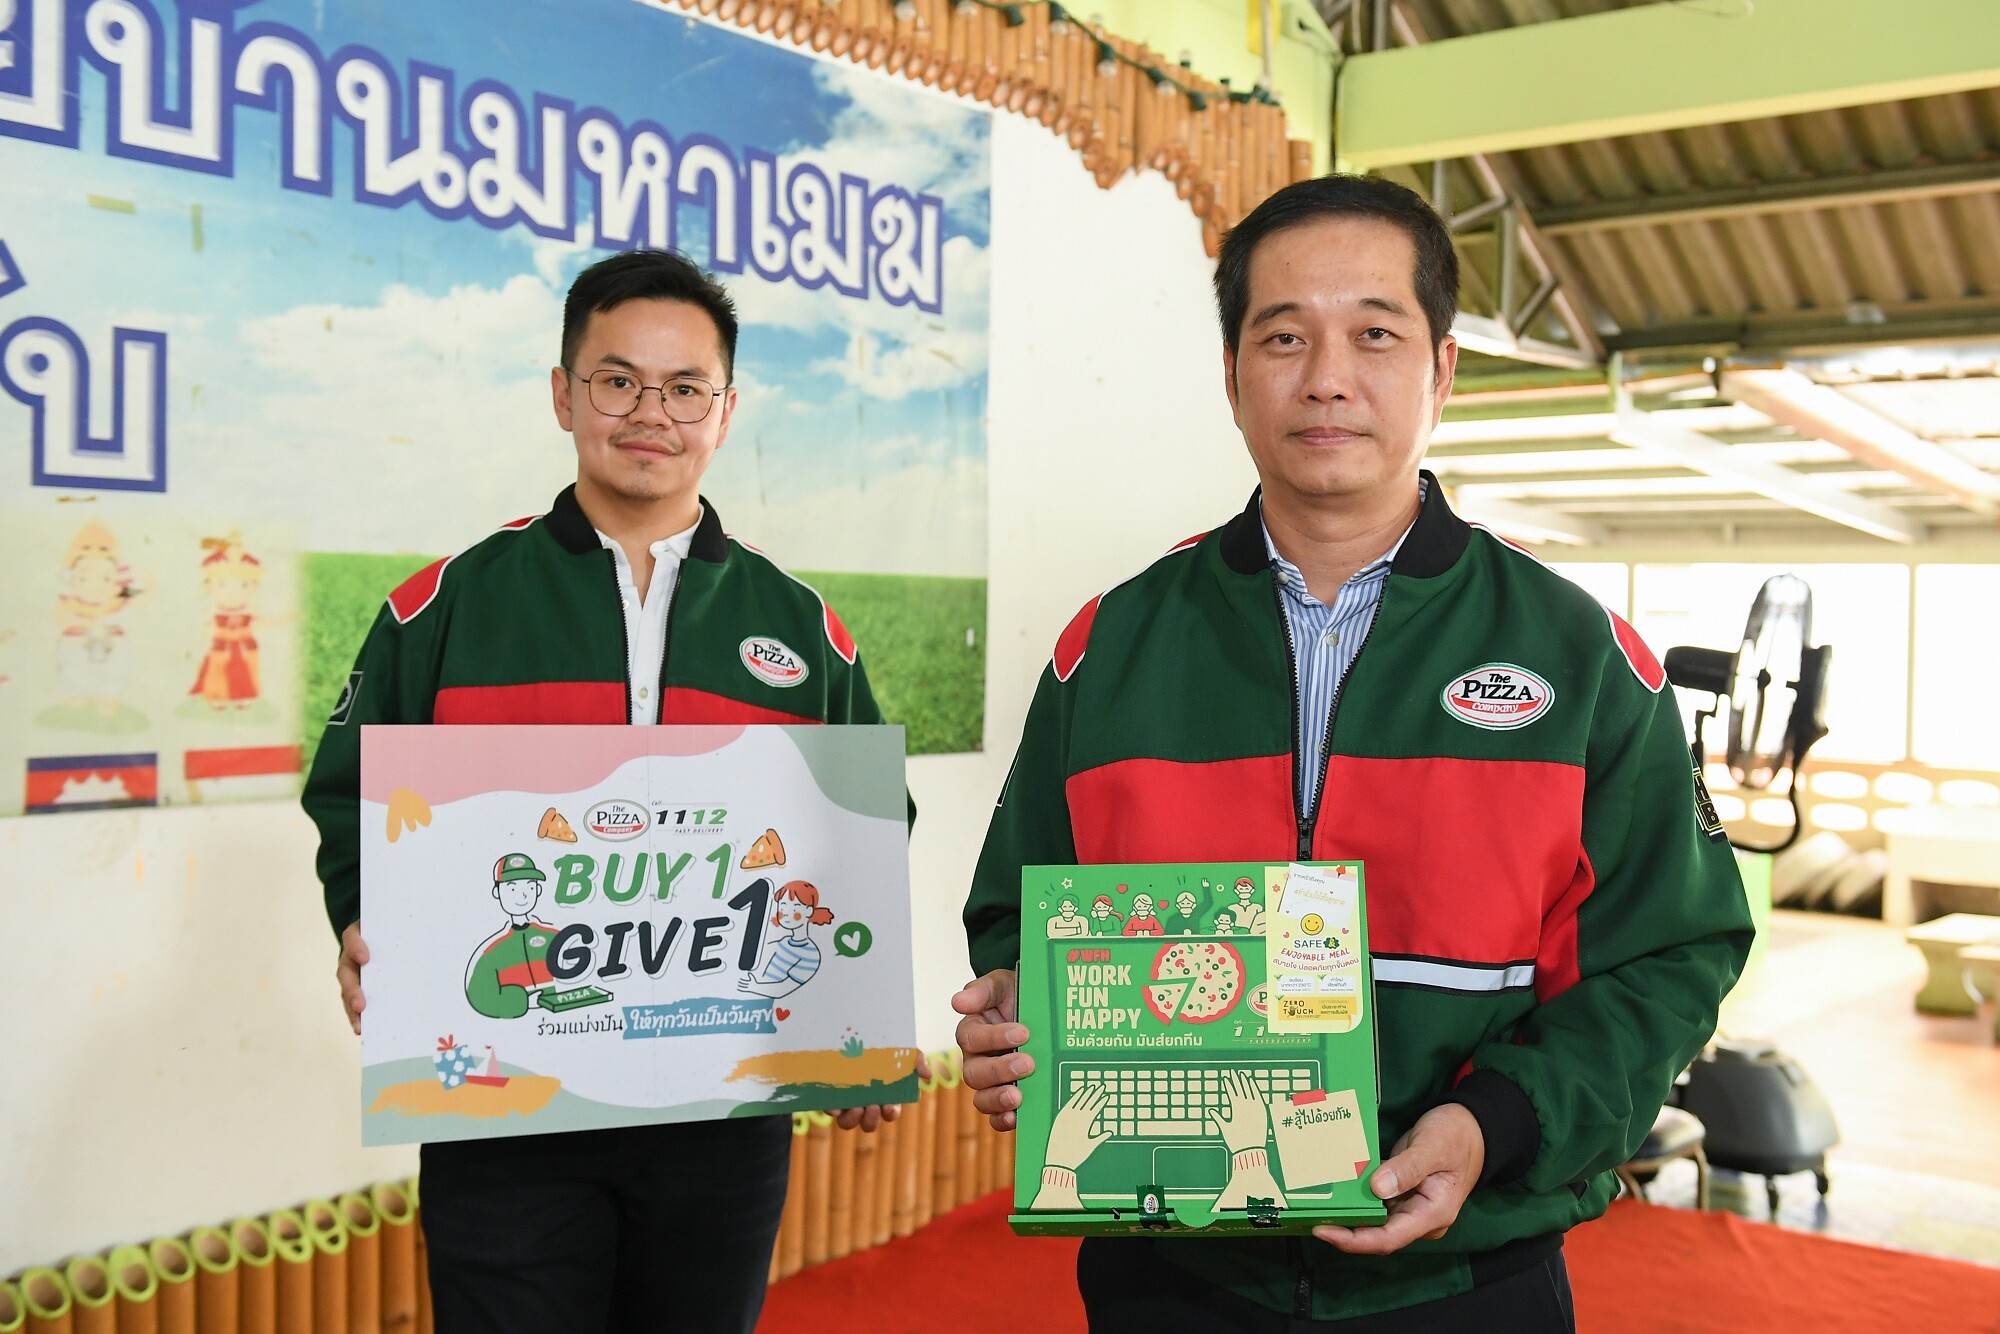 ภาพข่าว: เดอะ พิซซ่า คอมปะนี ส่งต่อพิซซ่าในโครงการ “Buy 1 Give 1 คุณอิ่มท้อง น้องอิ่มด้วย” สู่โรงเรียน - มูลนิธิทั่วไทย